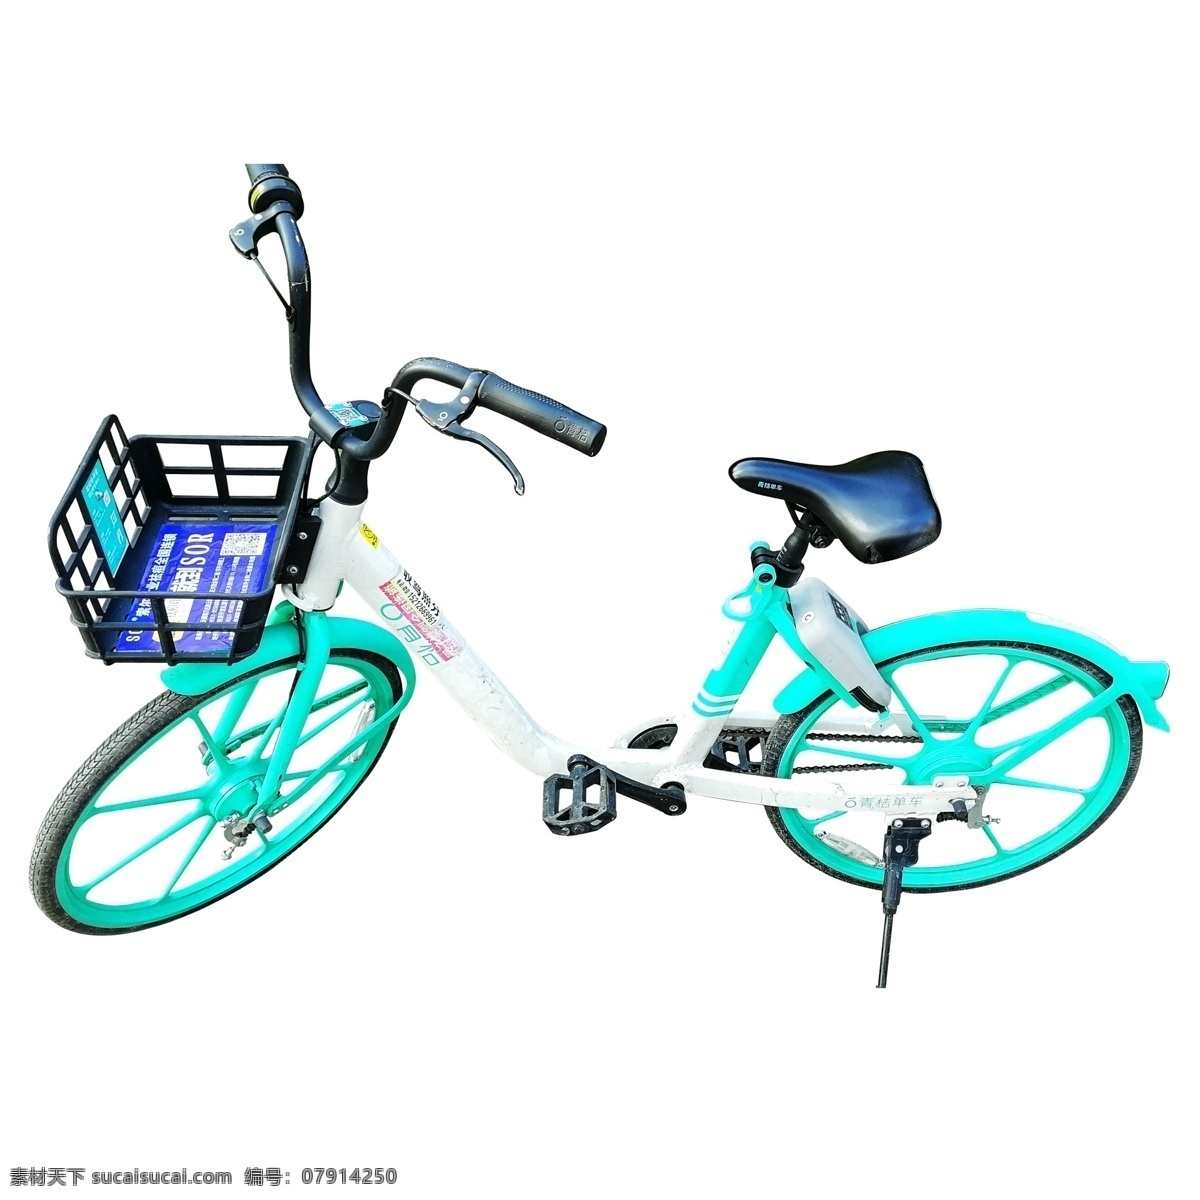 实拍 城市 共享 单车 自行车 共享单车 扫码单车 共享自行车 绿色出行 实拍共享单车